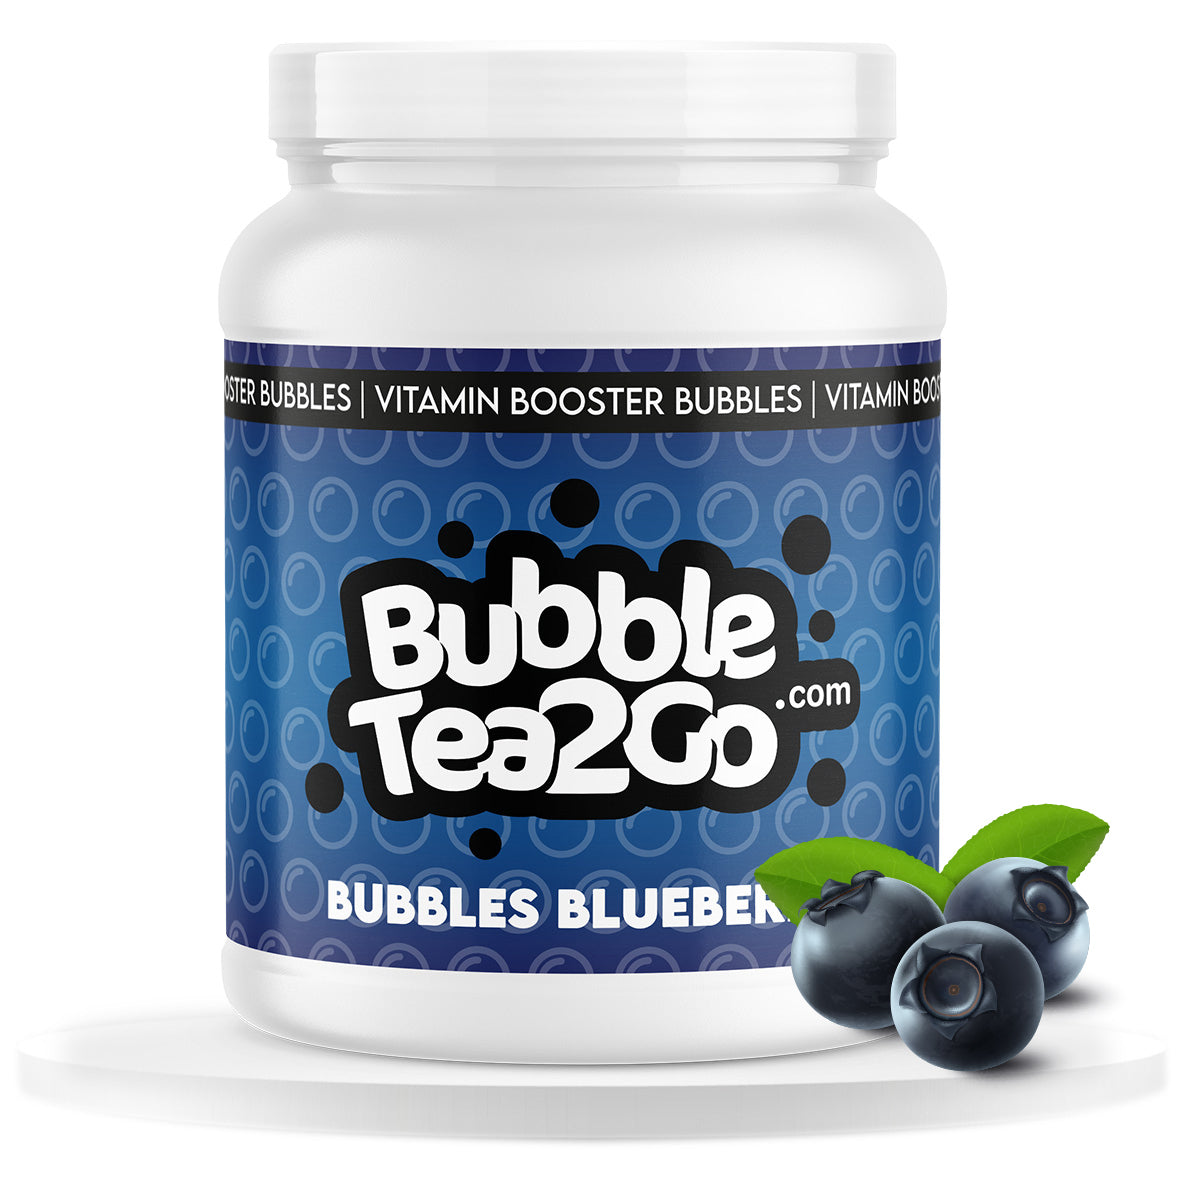 Bubbles gastronomy - Blueberry (1.2 kg)